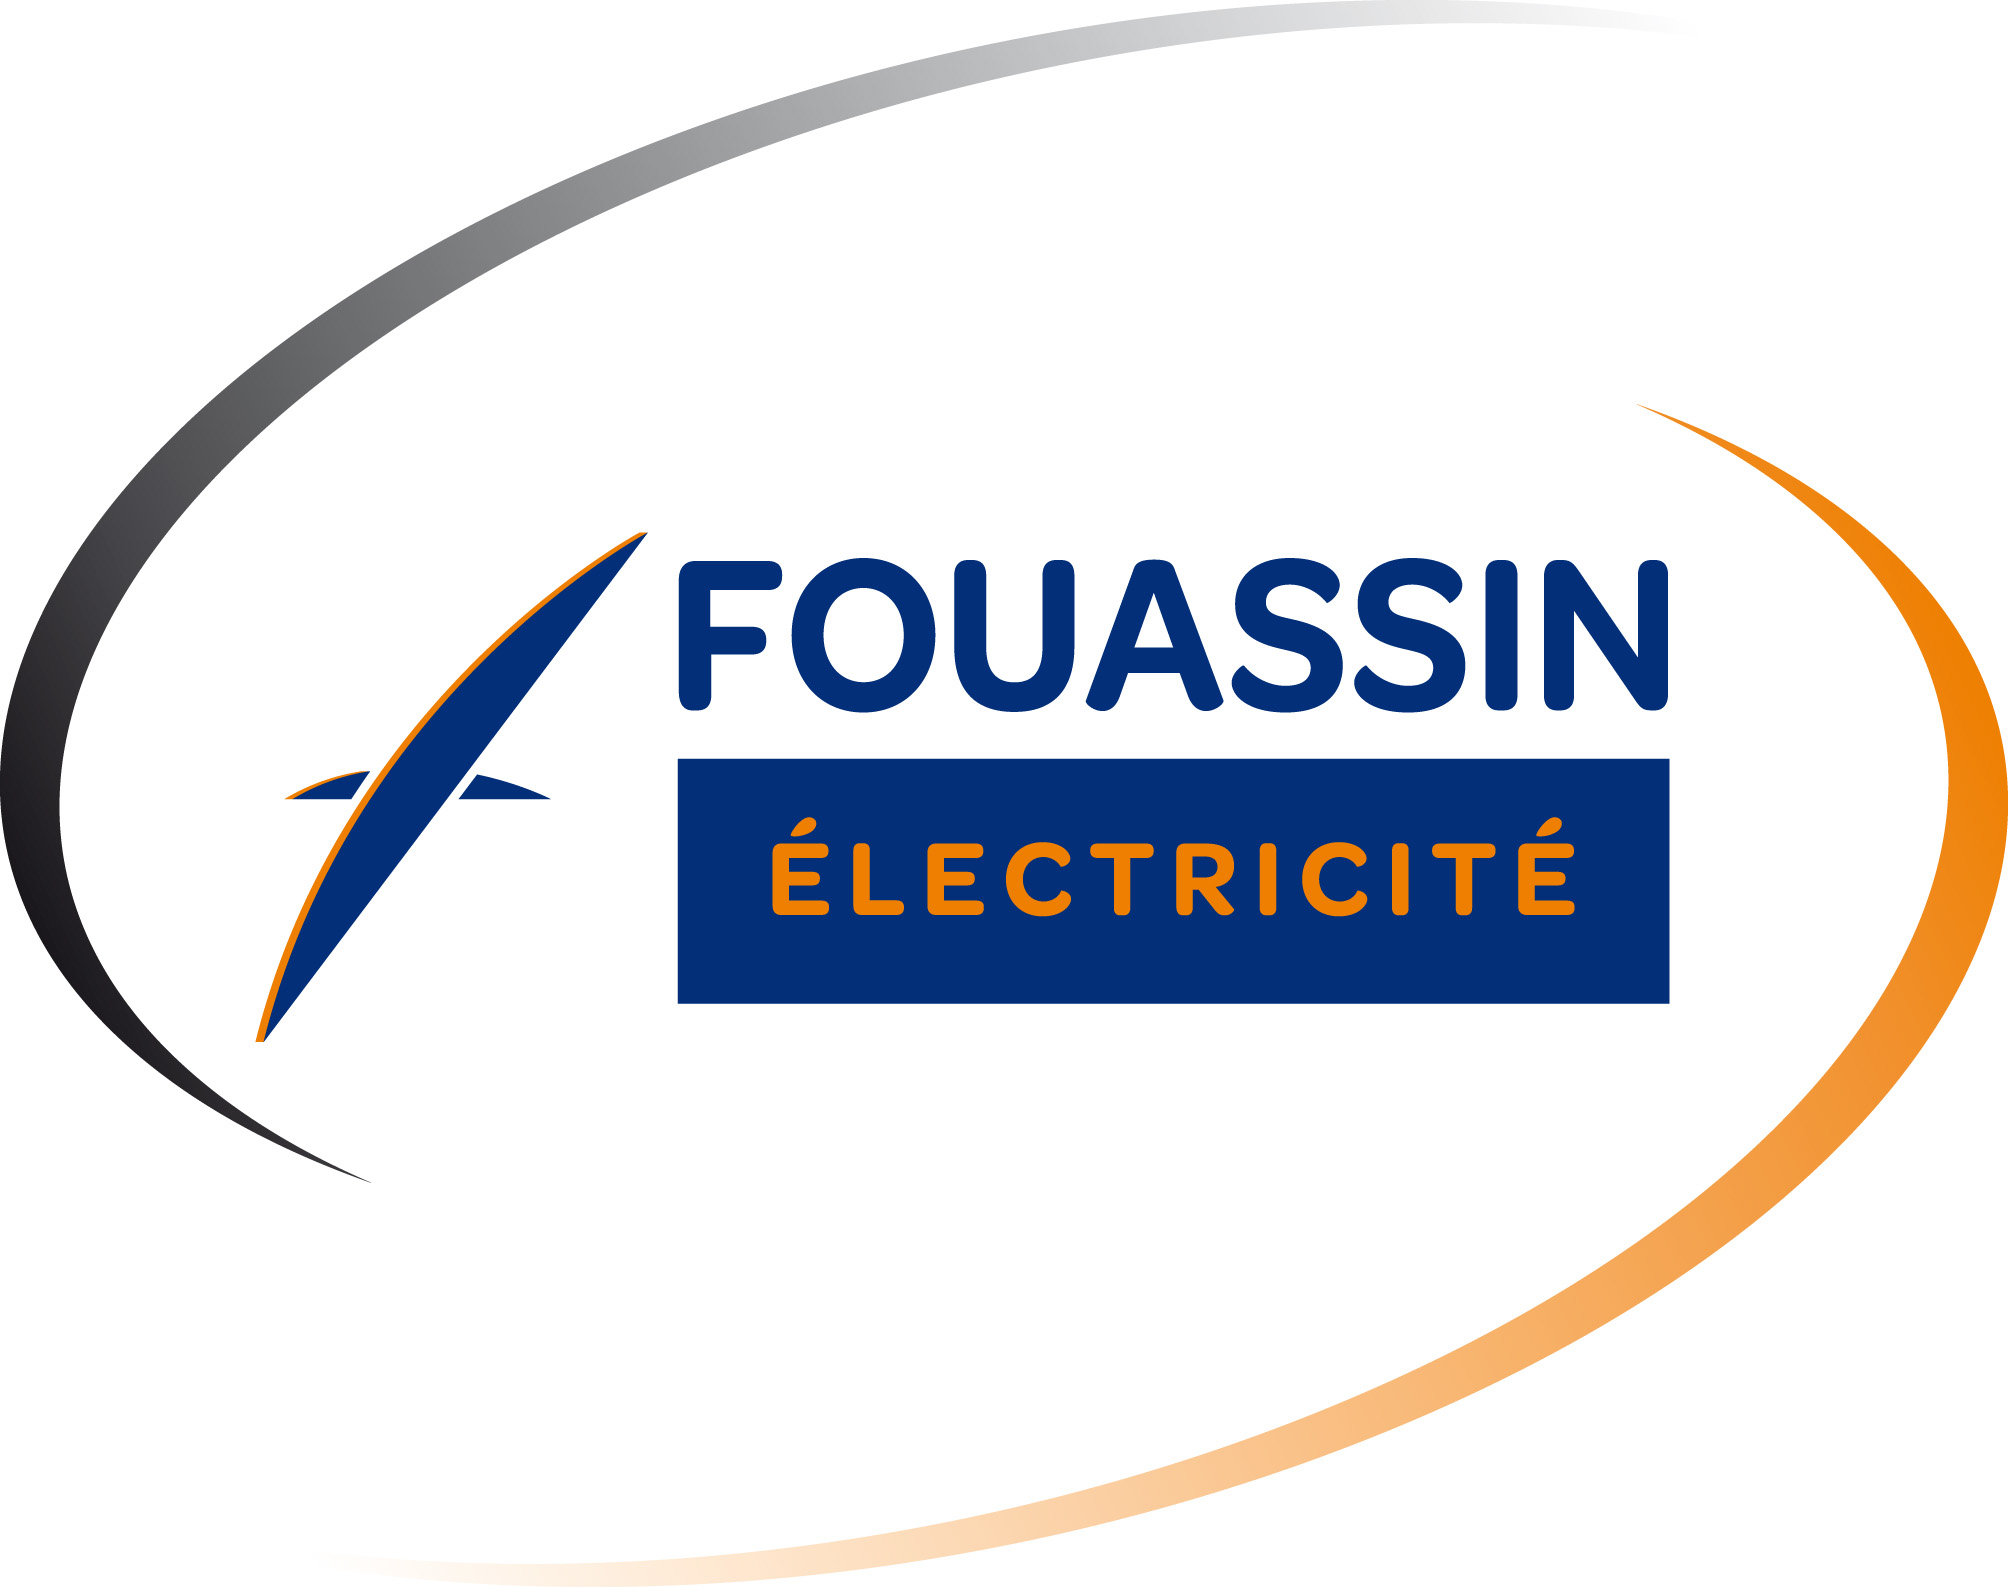 FOUASSIN_Logo fevrier 2019.jpg 